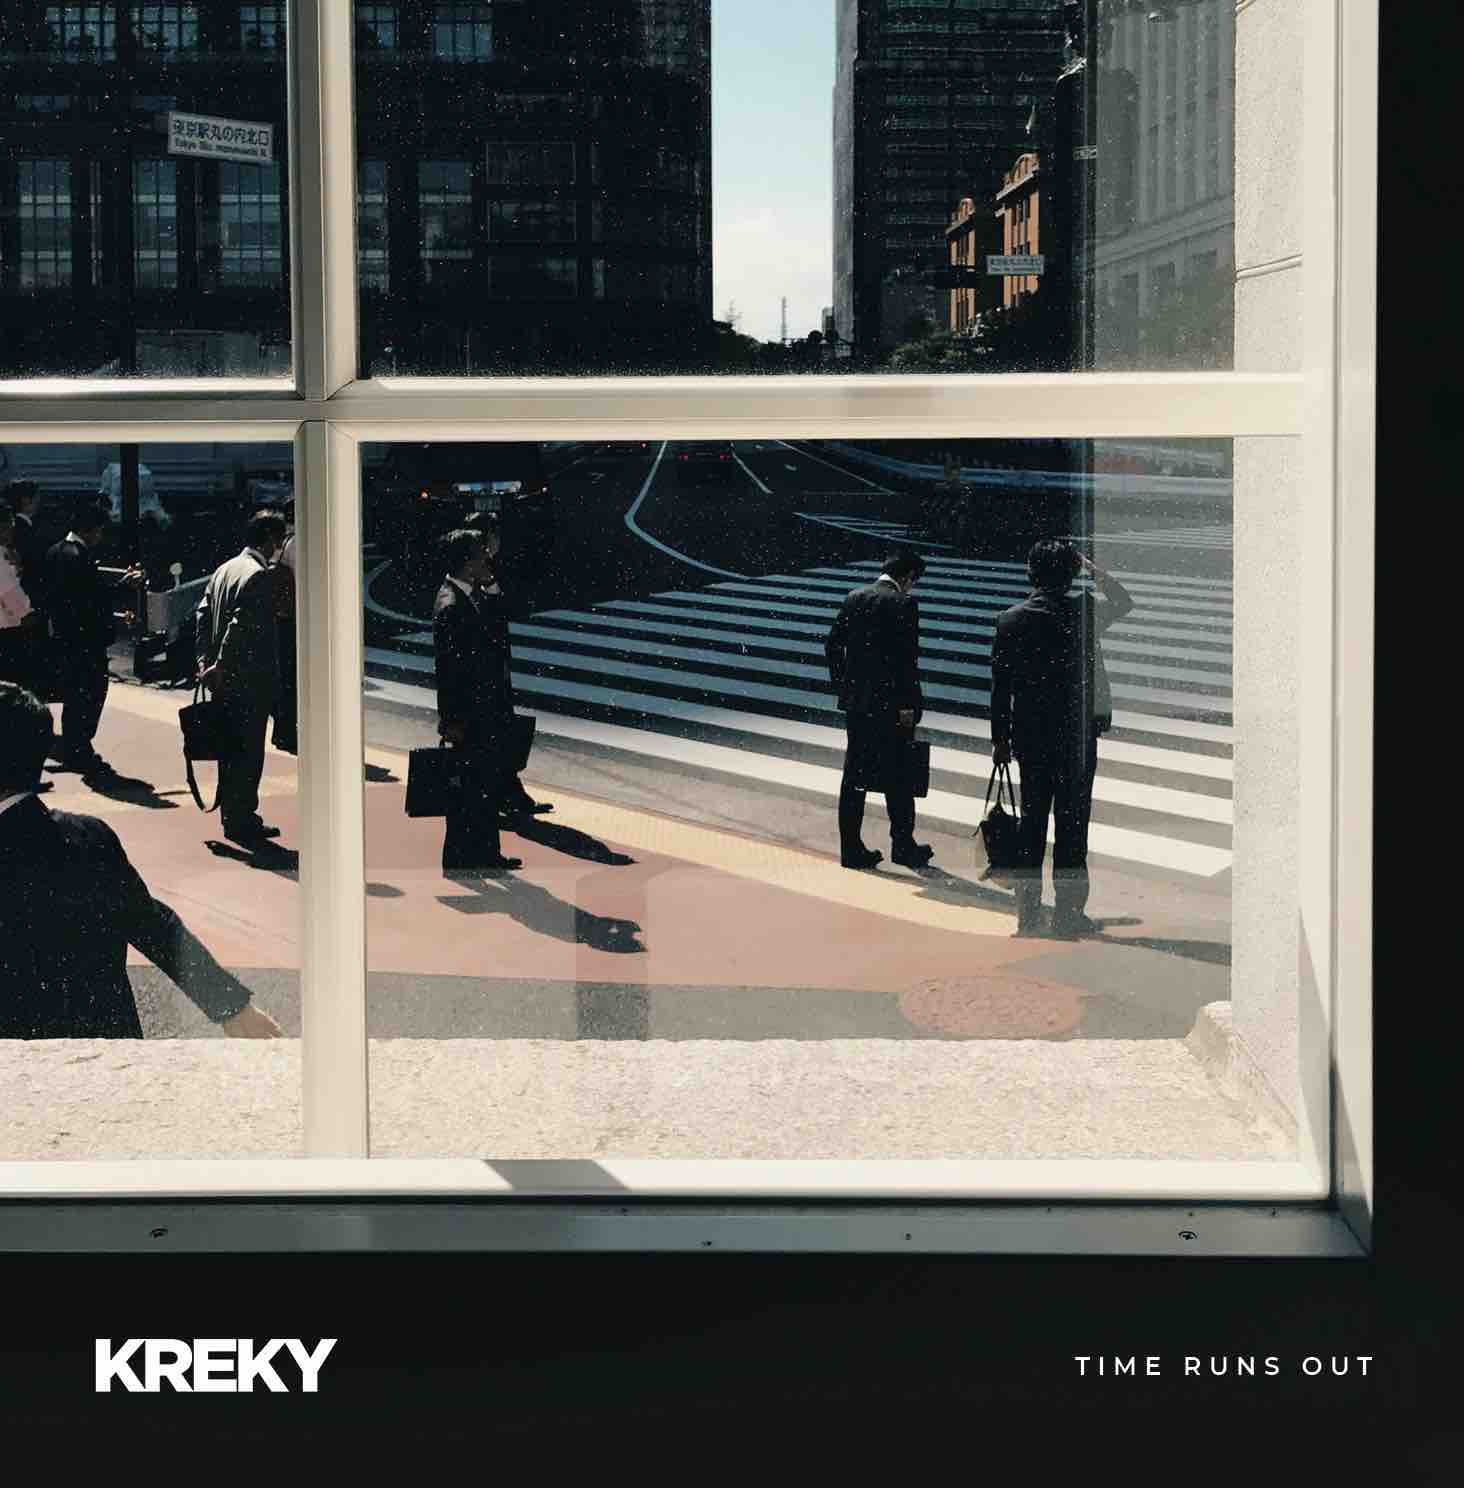 Kreky: Esce venerdì 1° marzo in digitale “Time Runs Out”, il nuovo album